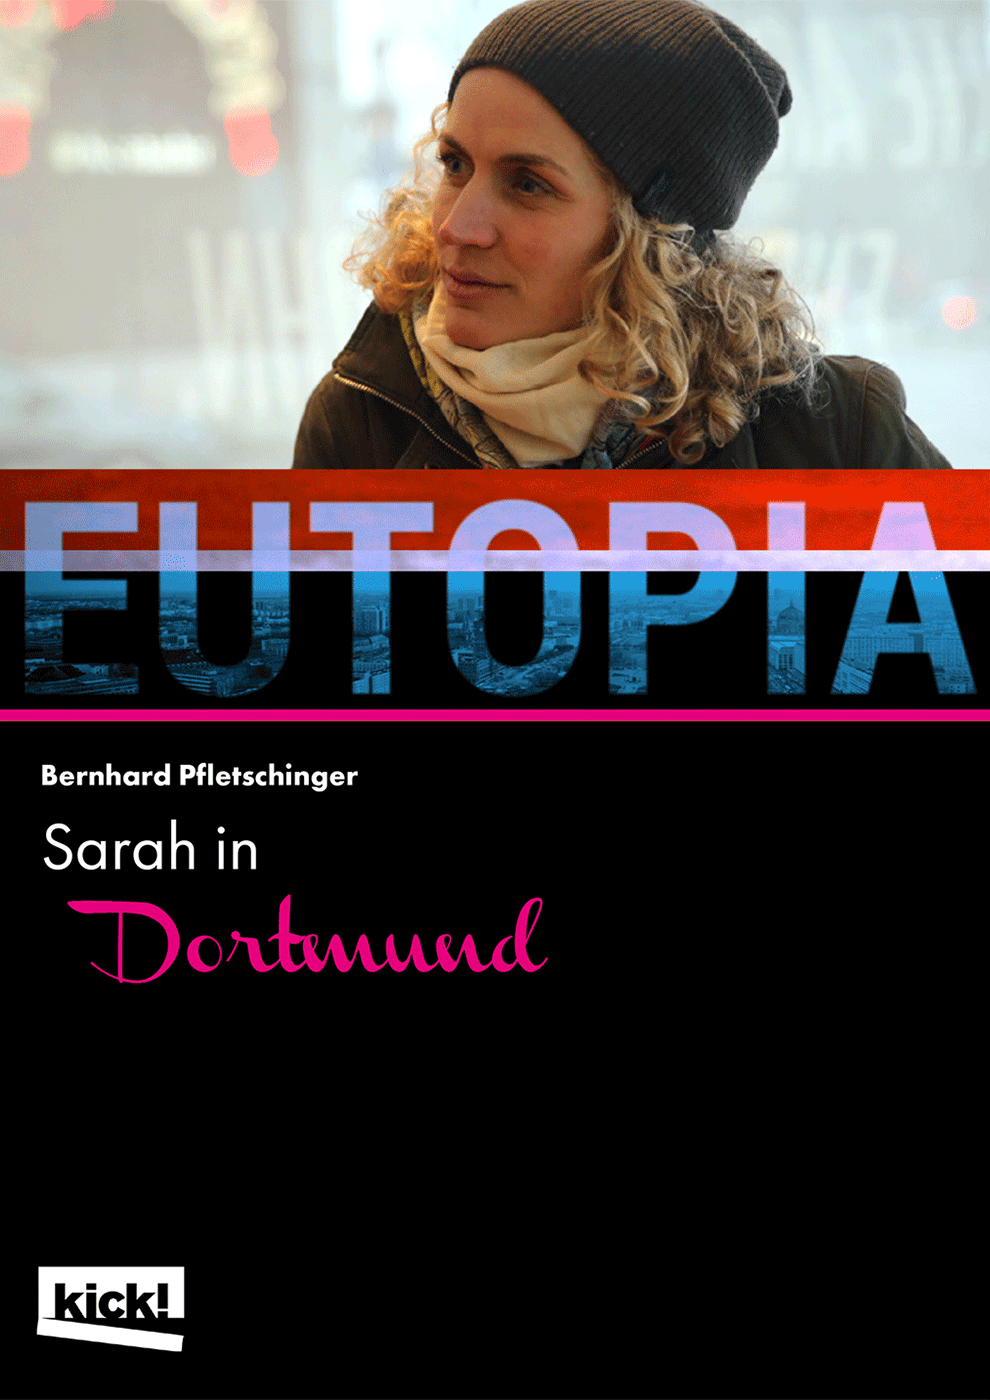 EUTOPIA - Sarah in Dortmund Ein Film von Bernhard Pfletschinger